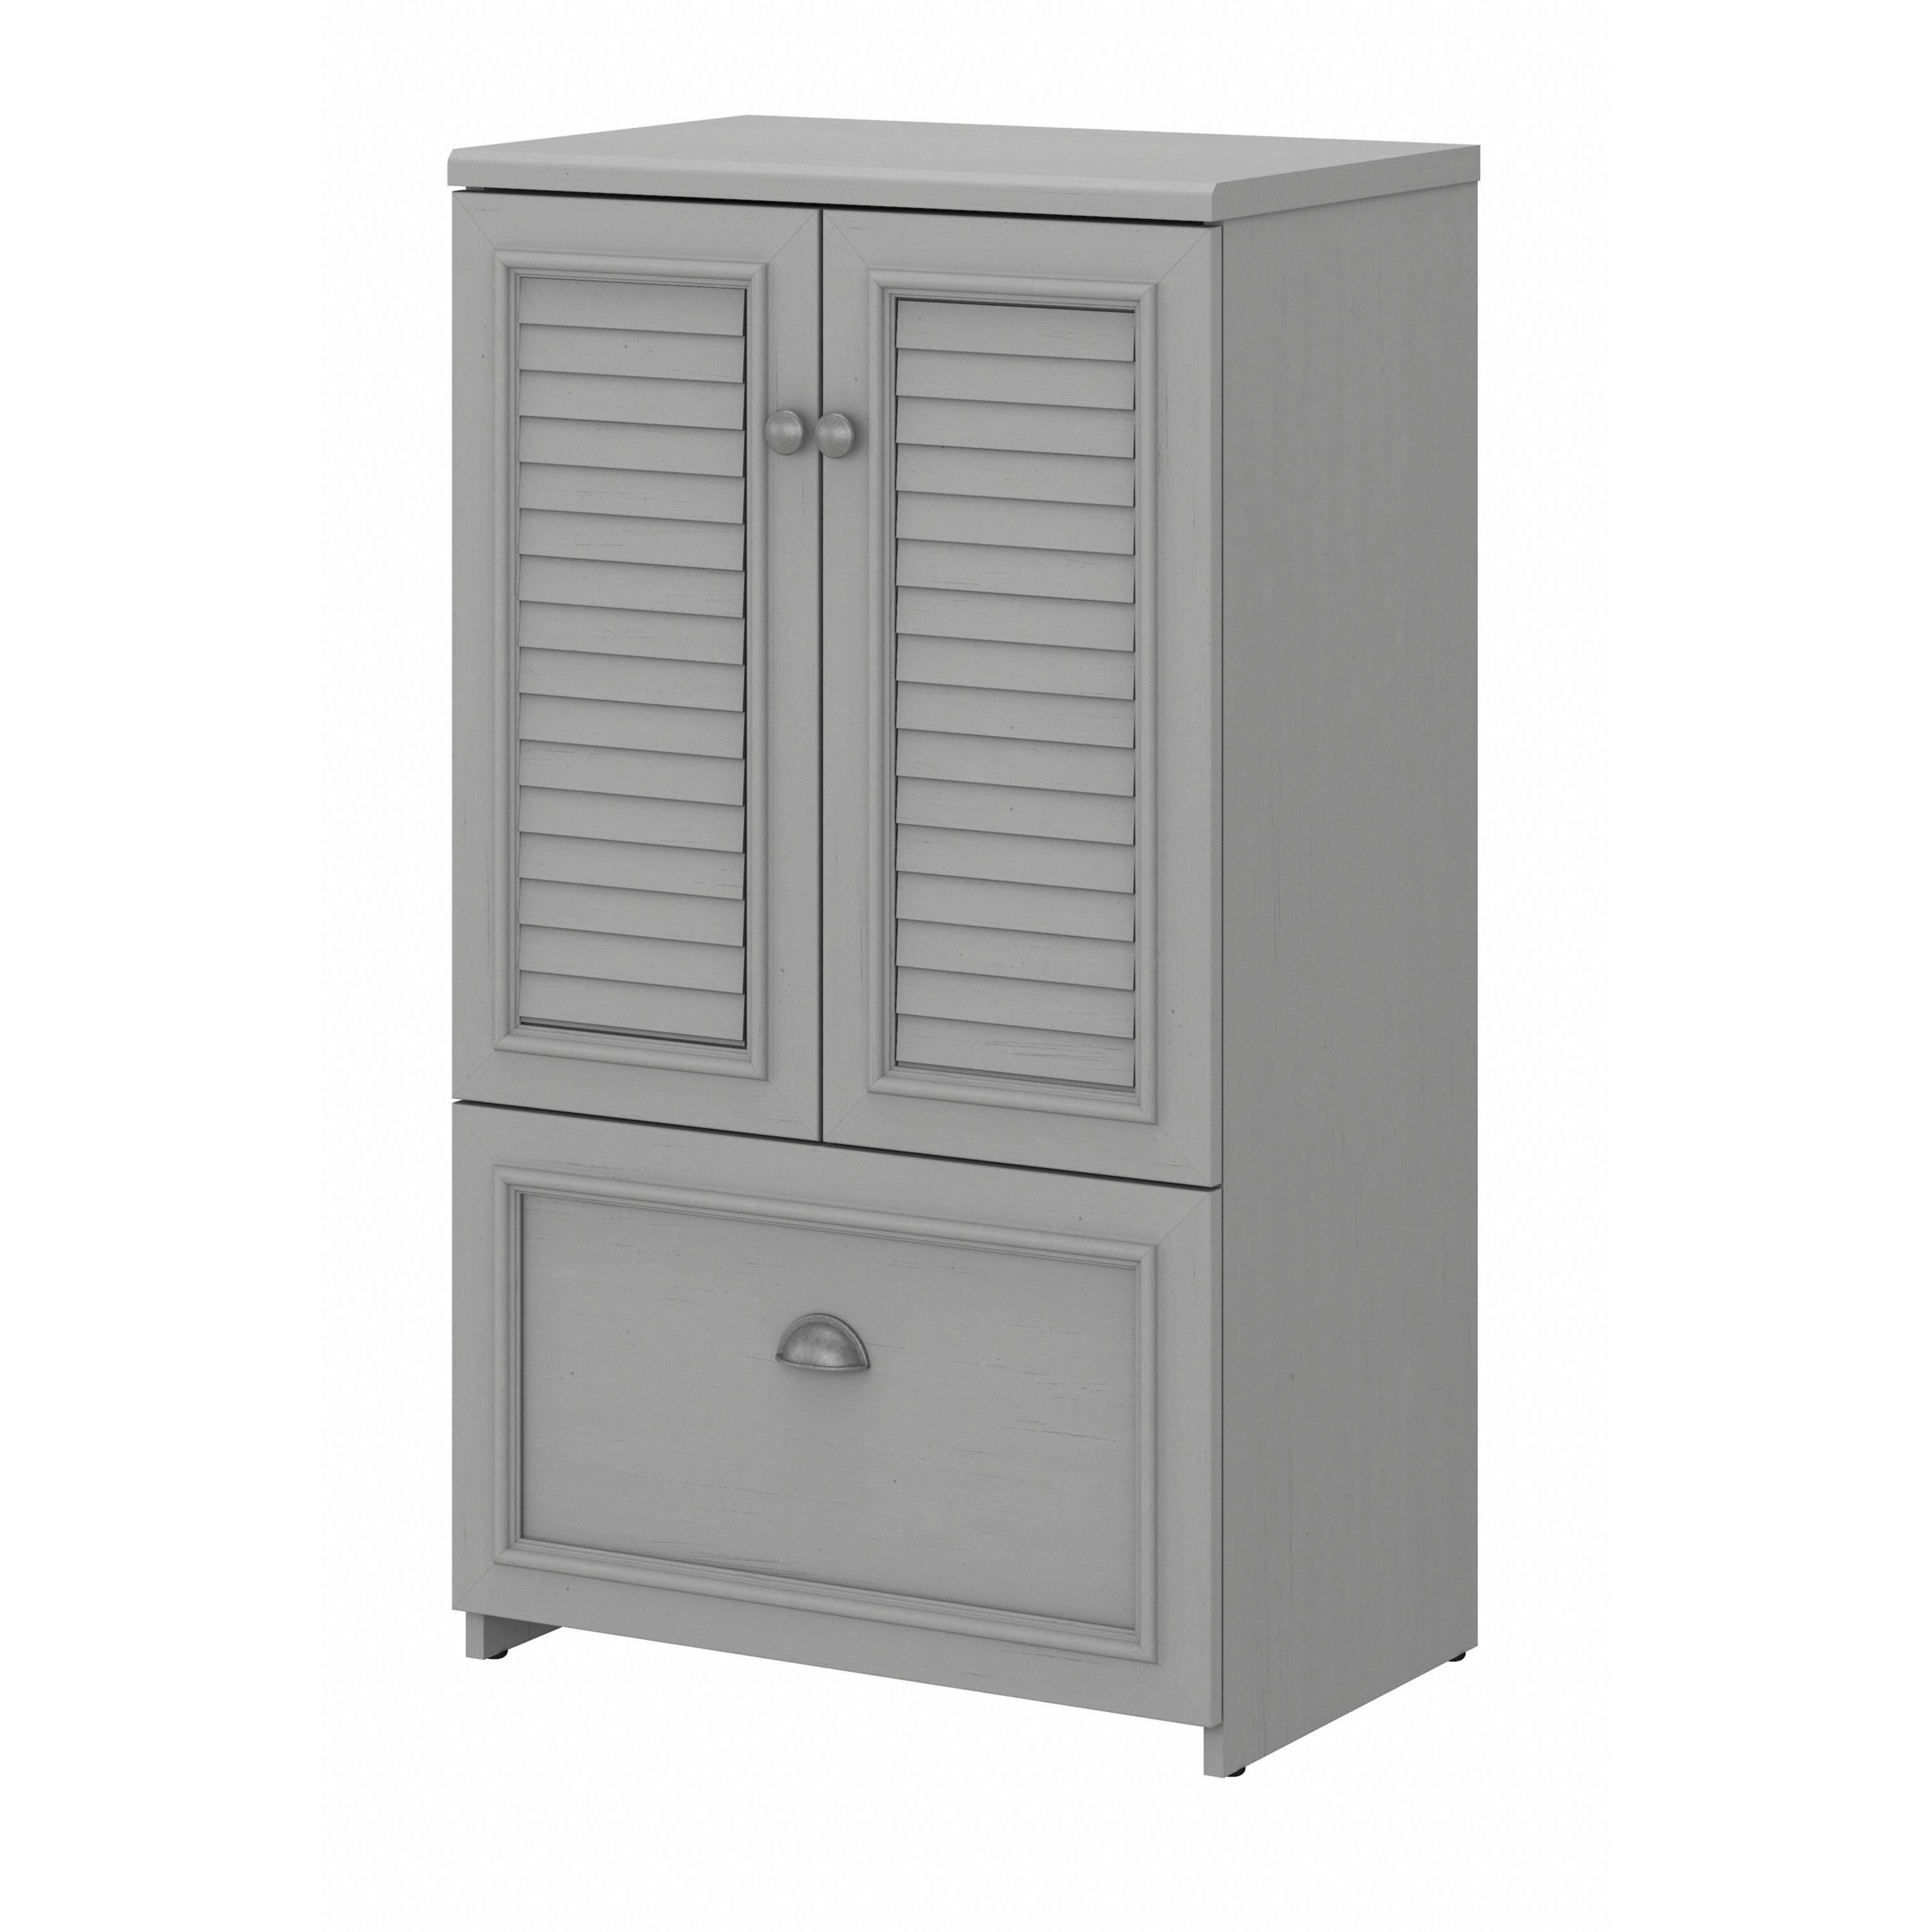 Shop Bush Furniture Fairview Shoe Storage Cabinet with Doors 02 FV020CG #color_cape cod gray